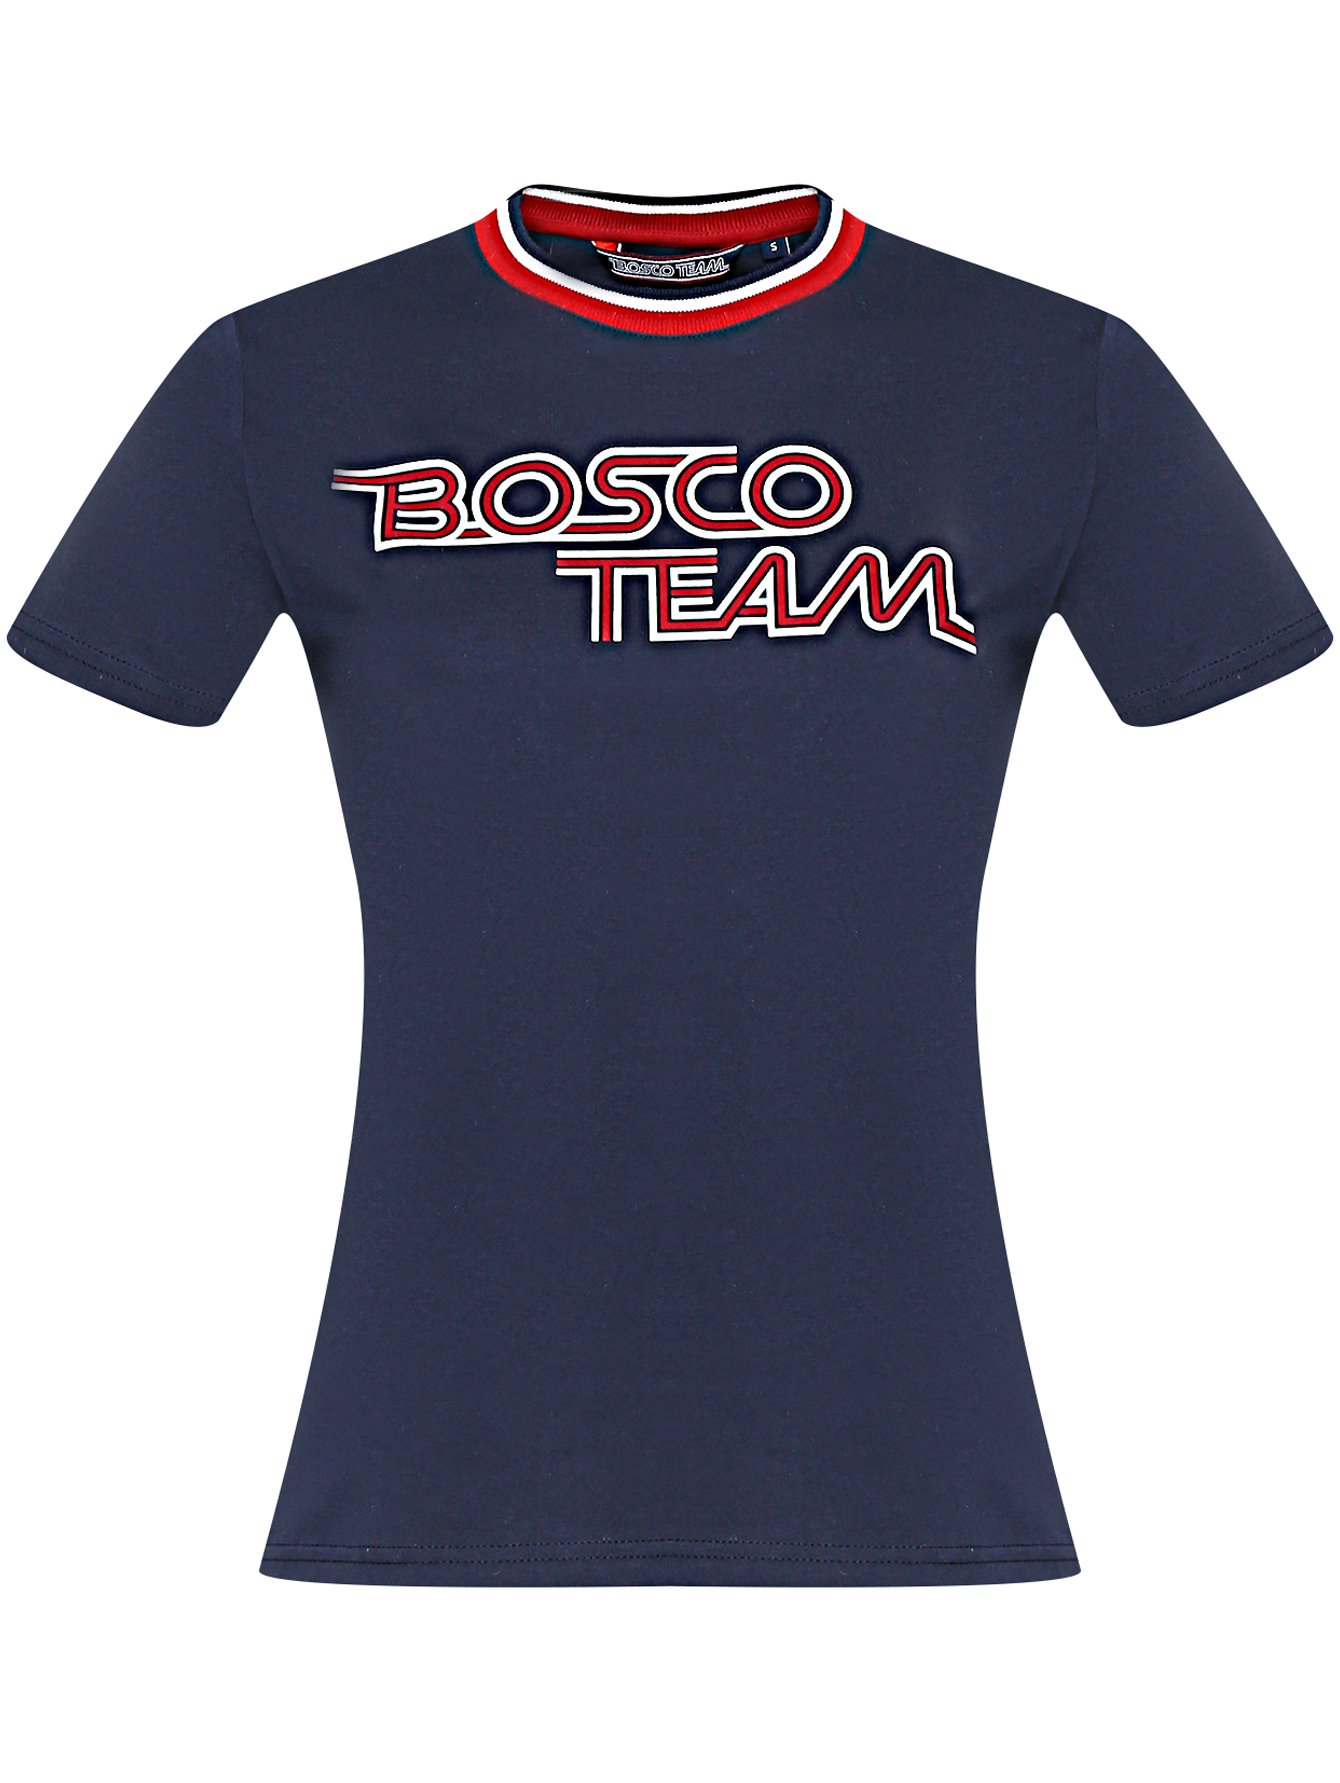 Боско 18. Футболка Bosco Team. Футболка Bosco Russia. Футболка Russia Bosco женская. Футболка Bosco Sport Russia.